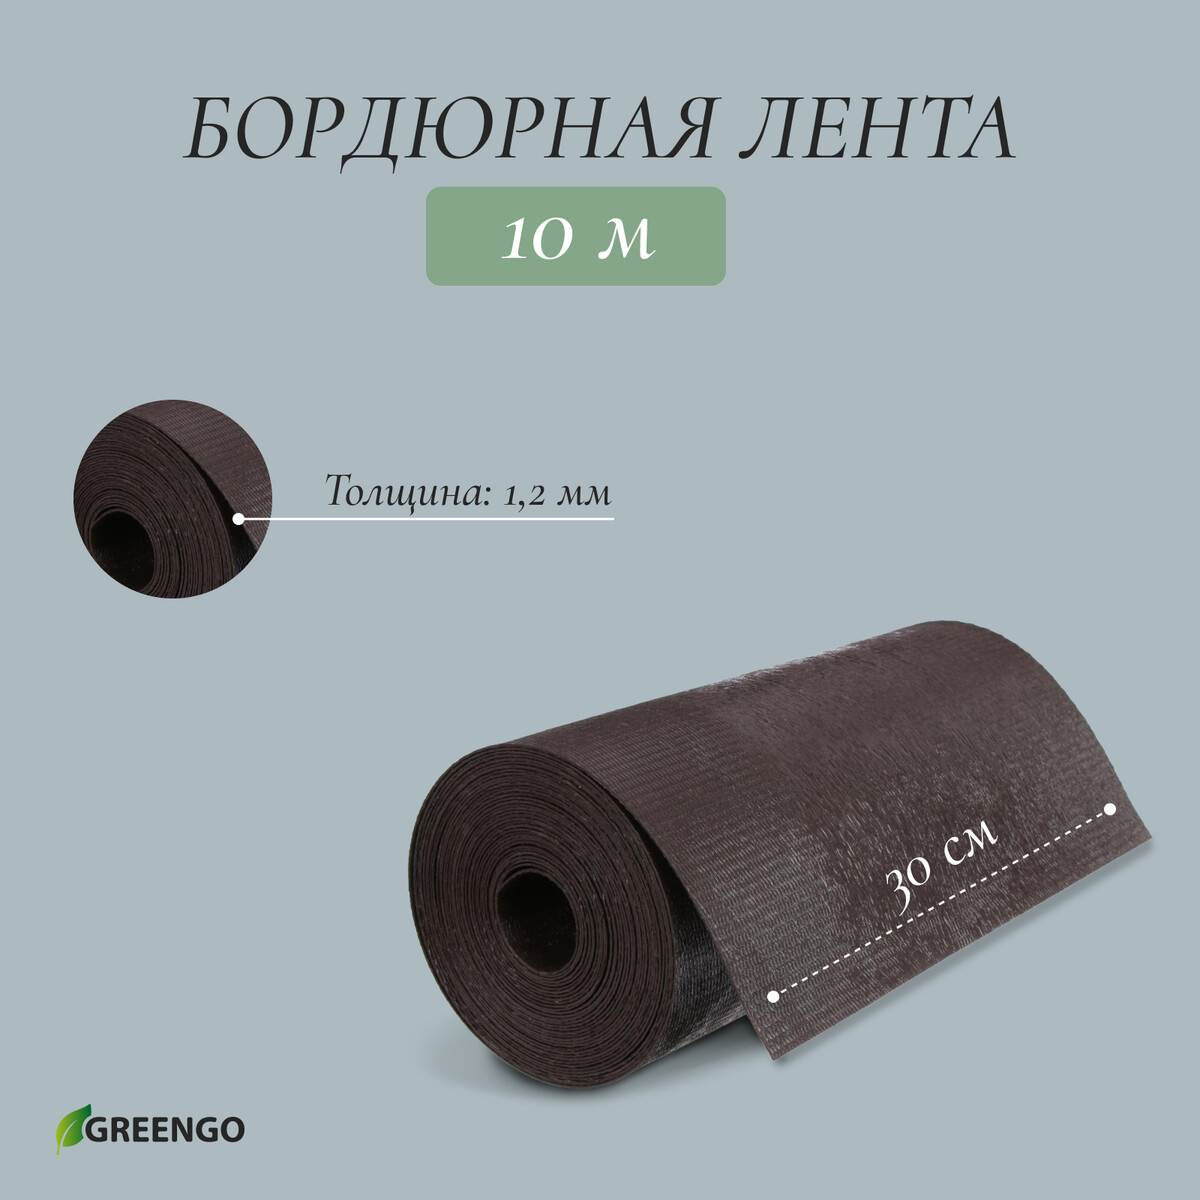 Лента бордюрная, 0.3 × 10 м, толщина 1.2 мм, пластиковая, коричневая, greengo лента бордюрная 0 1 × 10 м толщина 1 2 мм пластиковая коричневая greengo